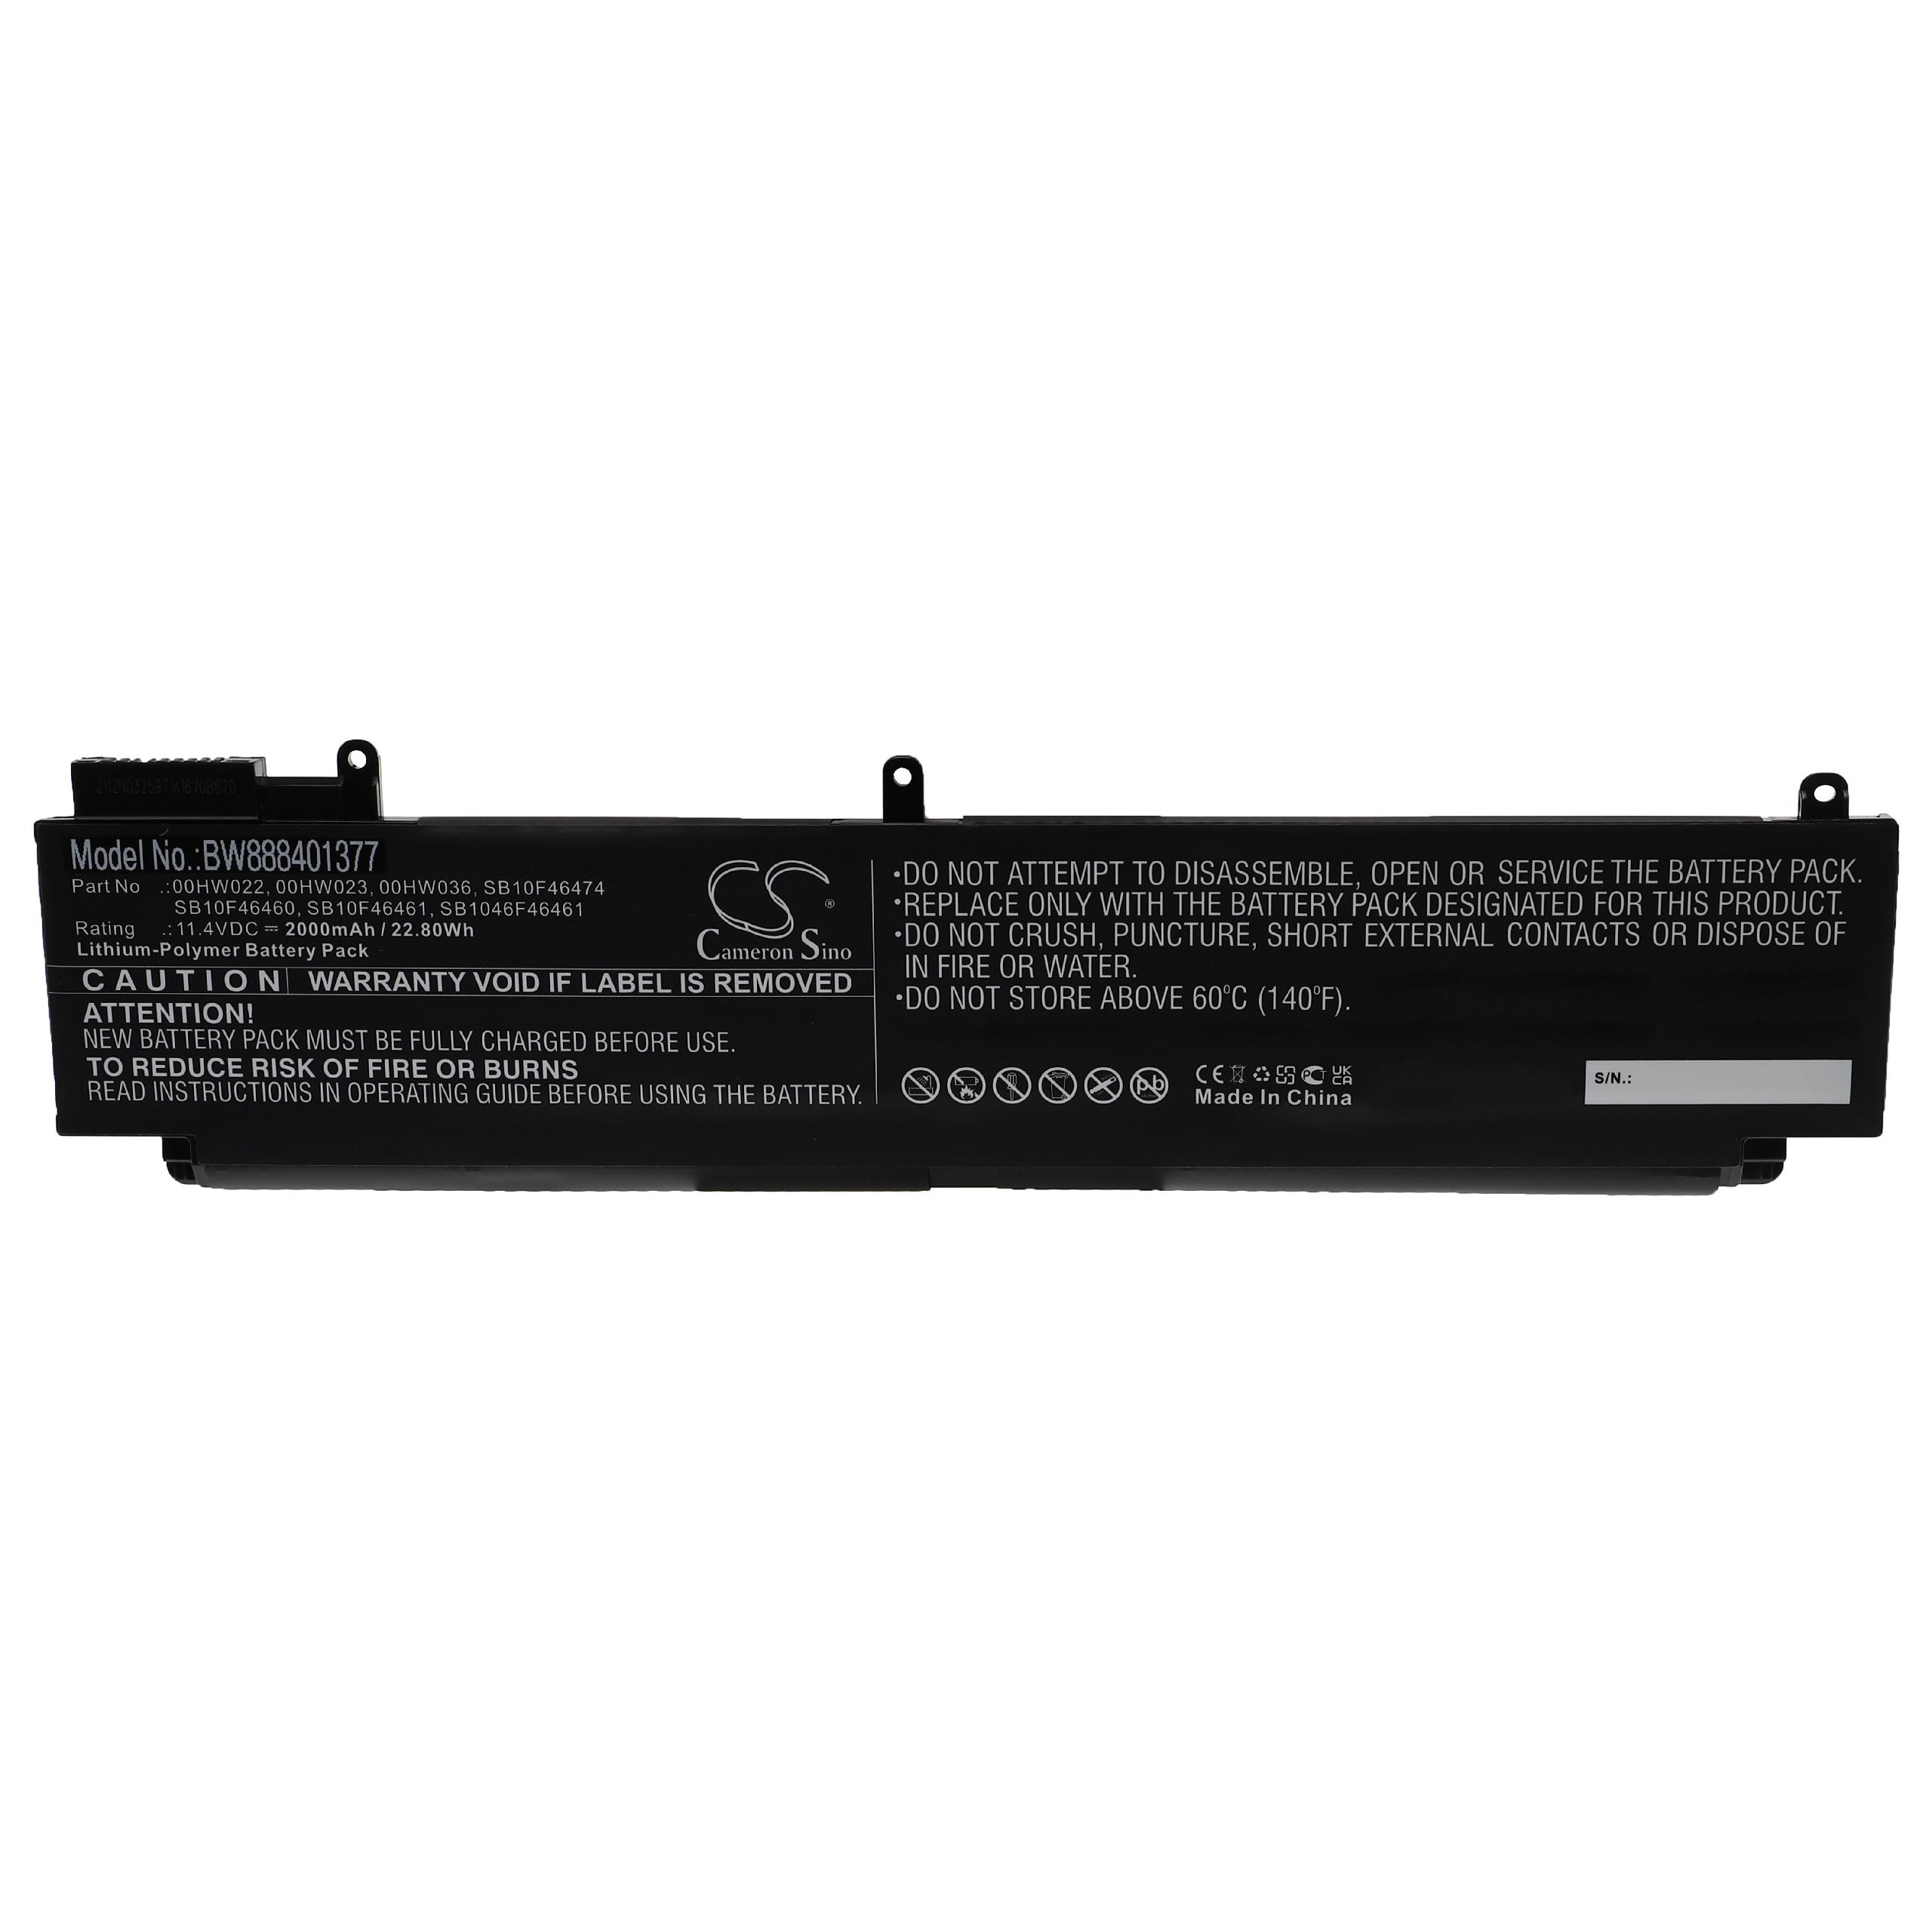 Notebook Battery Replacement for Lenovo 00HW022, SB1046F46461, 00HW023, 00HW036 - 2000mAh 11.4V Li-polymer